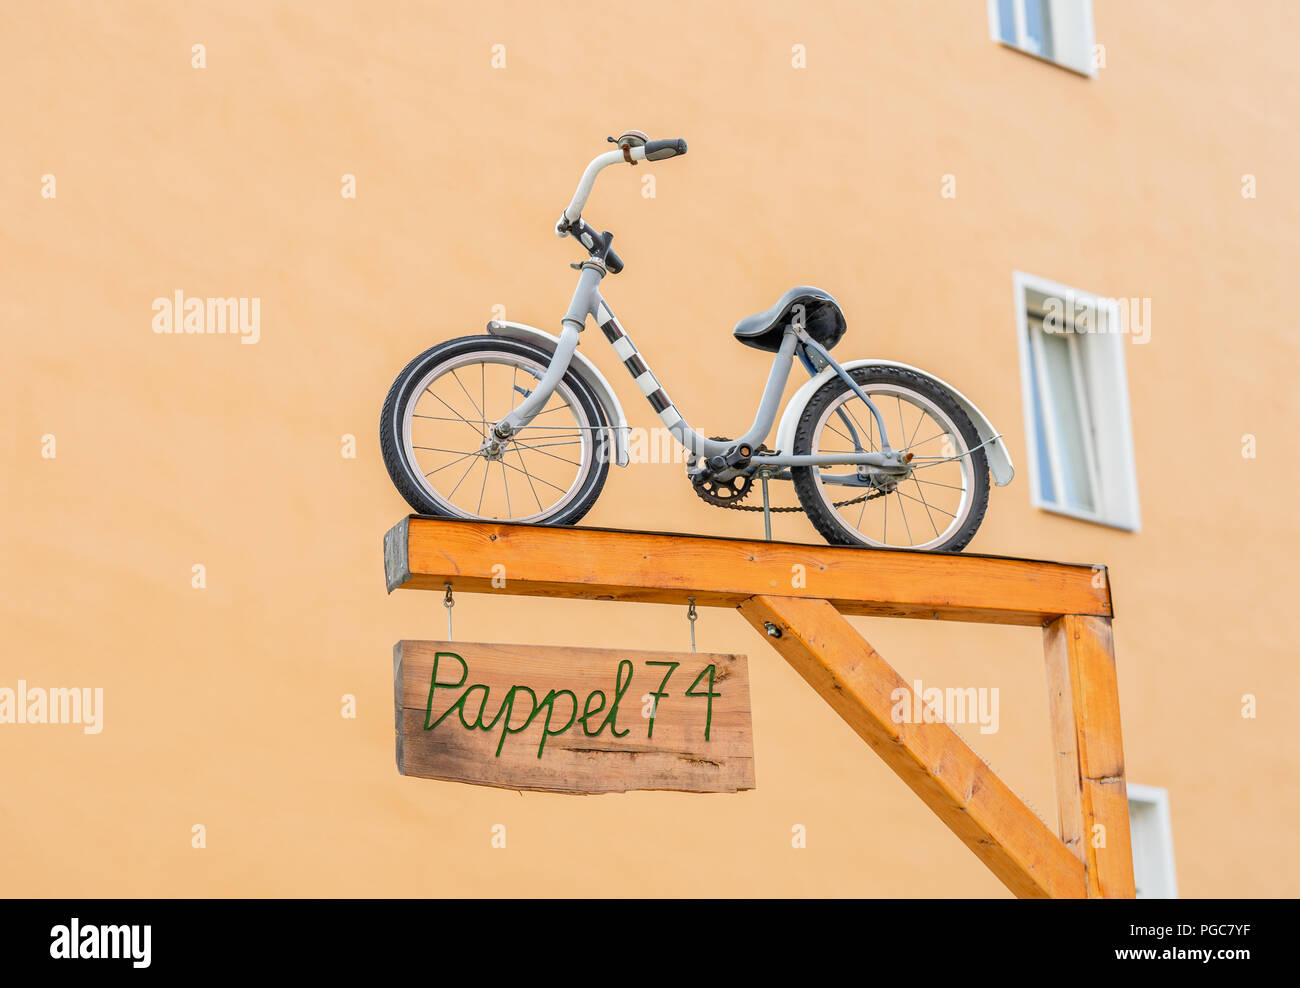 Eine kleine Kinder Fahrrad am Eingang der Pappel 74 - ein Jugendzentrum in der Kastanienallee im Bezirk Prenzlauer Berg, Berlin, Deutschland Stockfoto